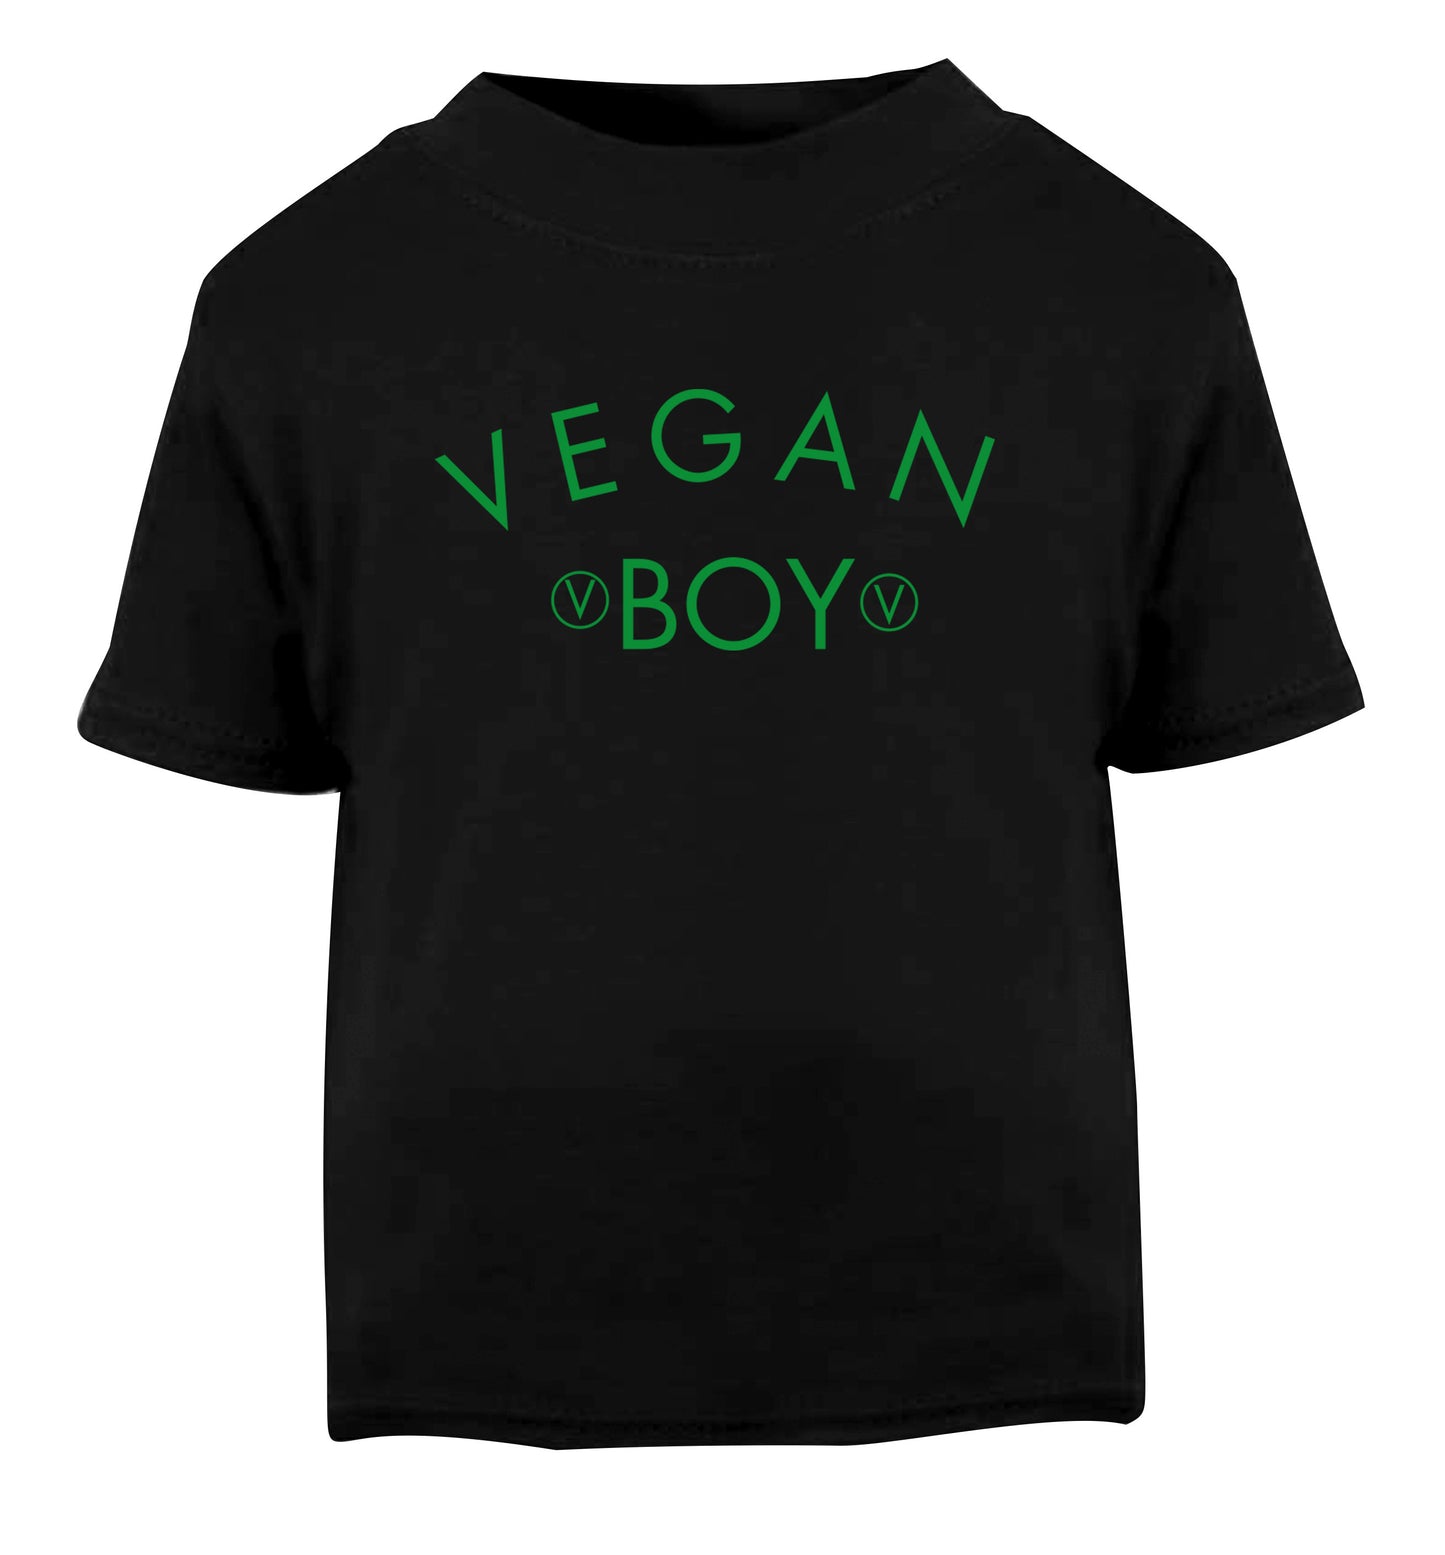 Vegan boy Black Baby Toddler Tshirt 2 years